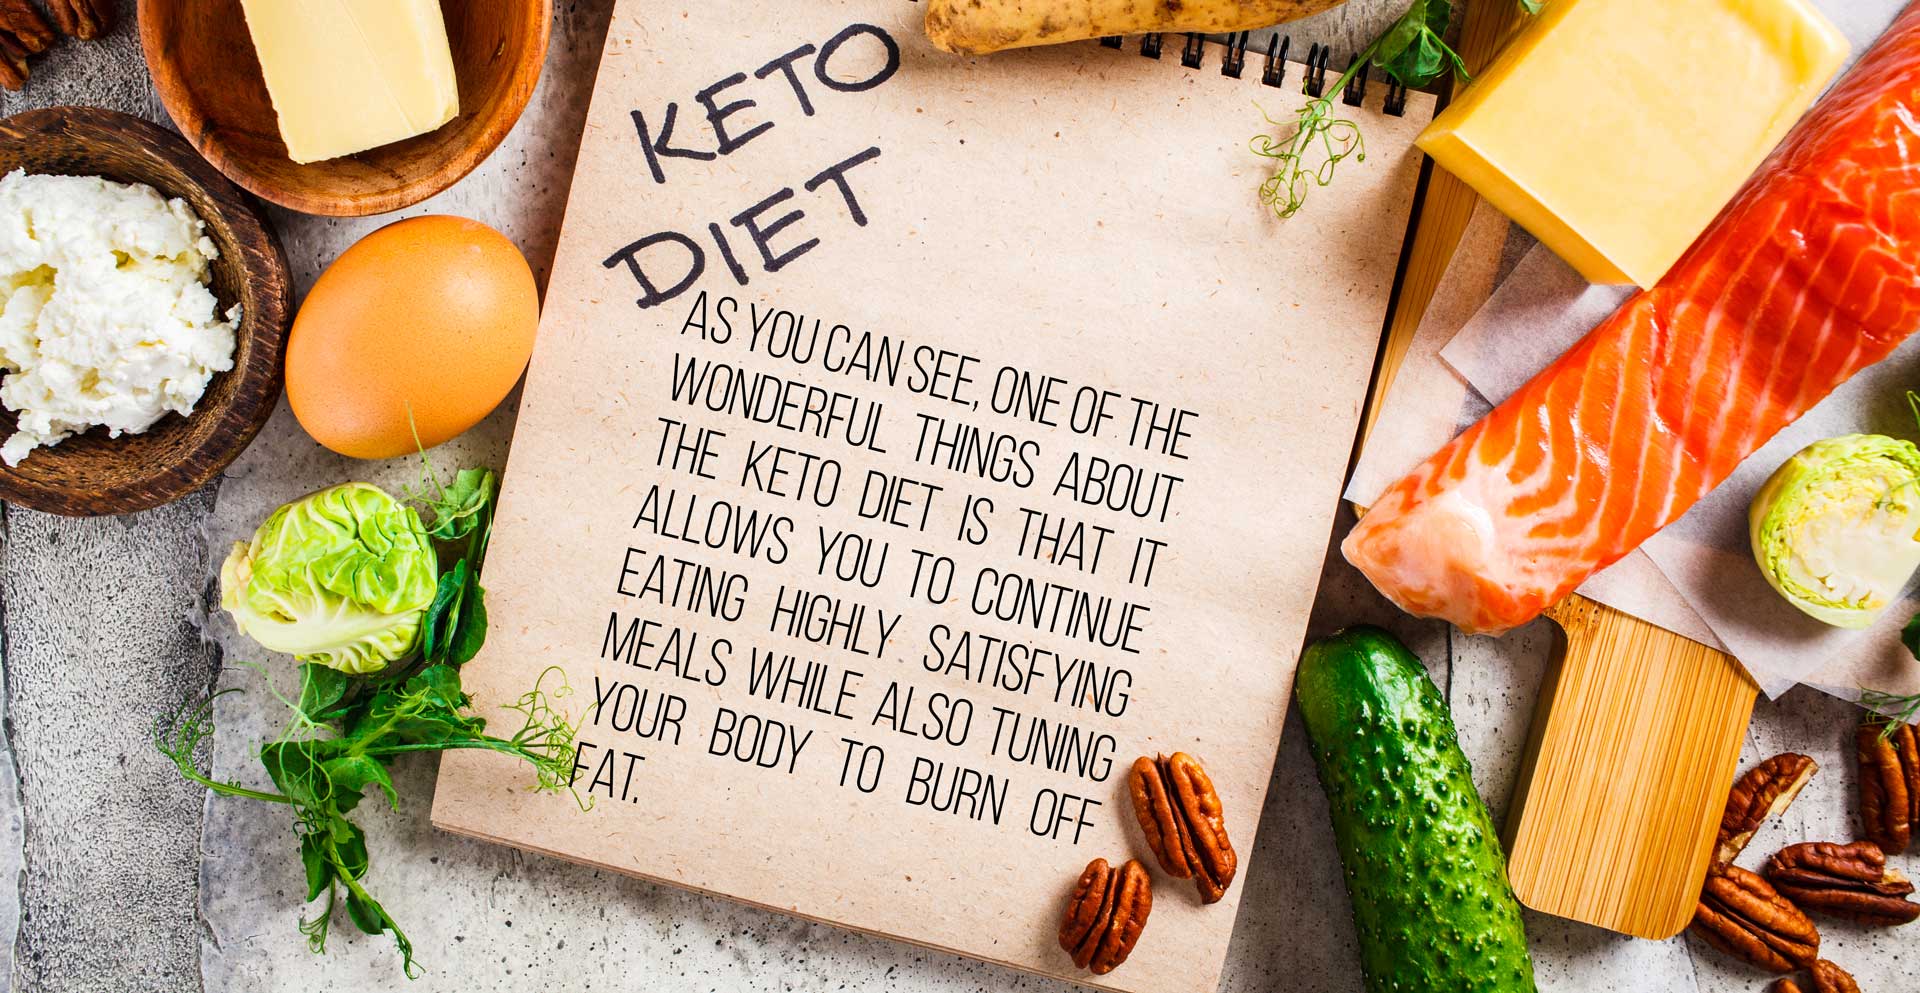 what to eat on keto diet, keto diet explained, jenna jameson on keto diet, keto diet plan for beginners, keto diet snacks